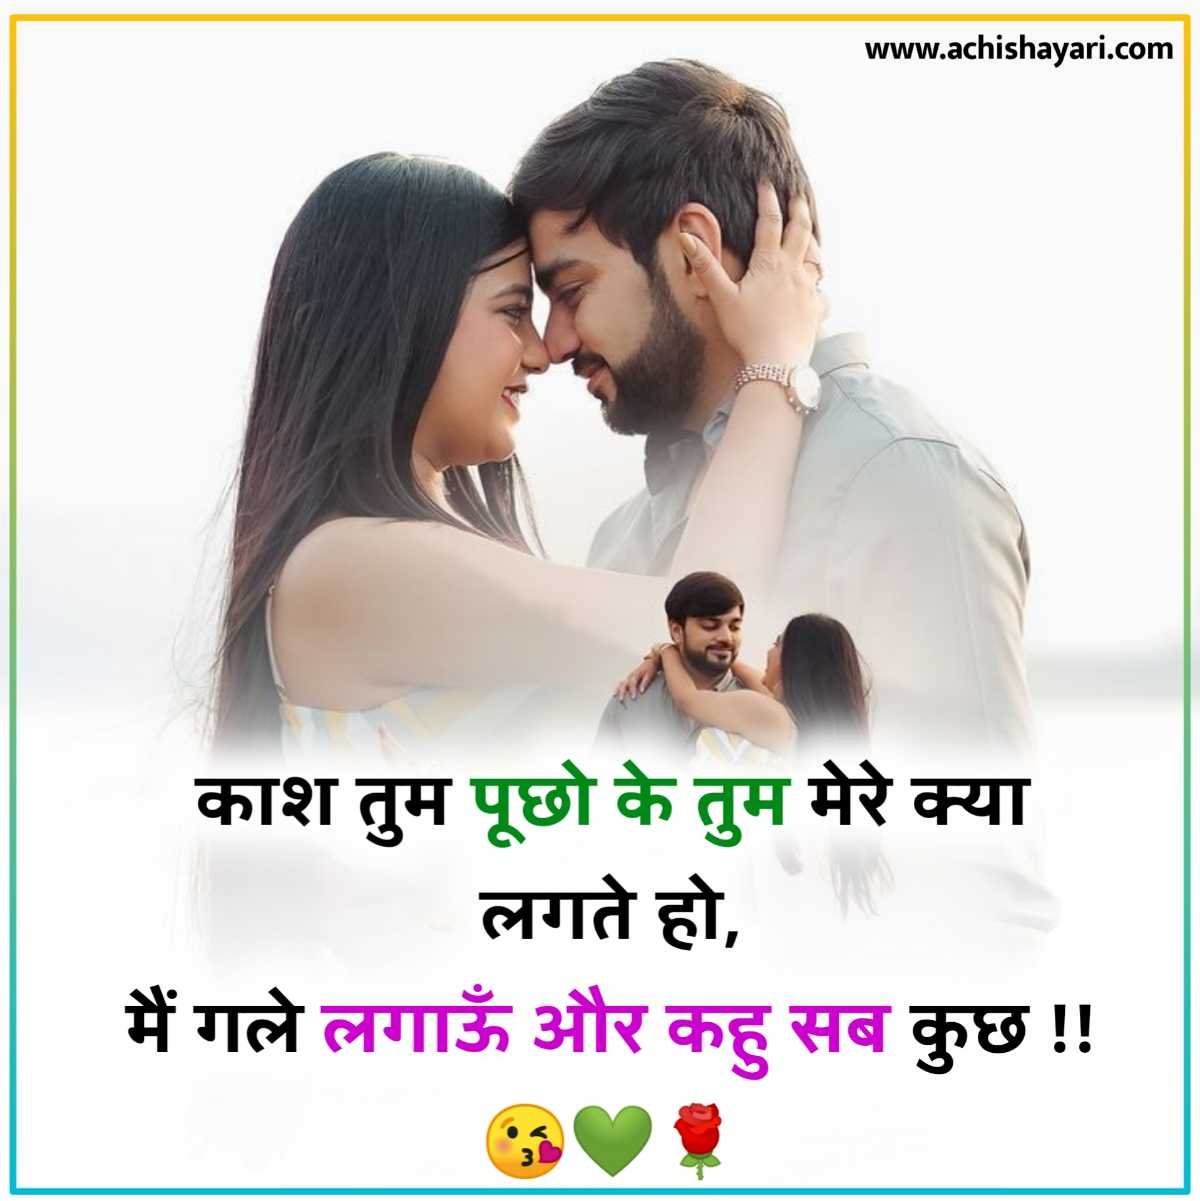 Love Shayari in Hindi for girlfriend 